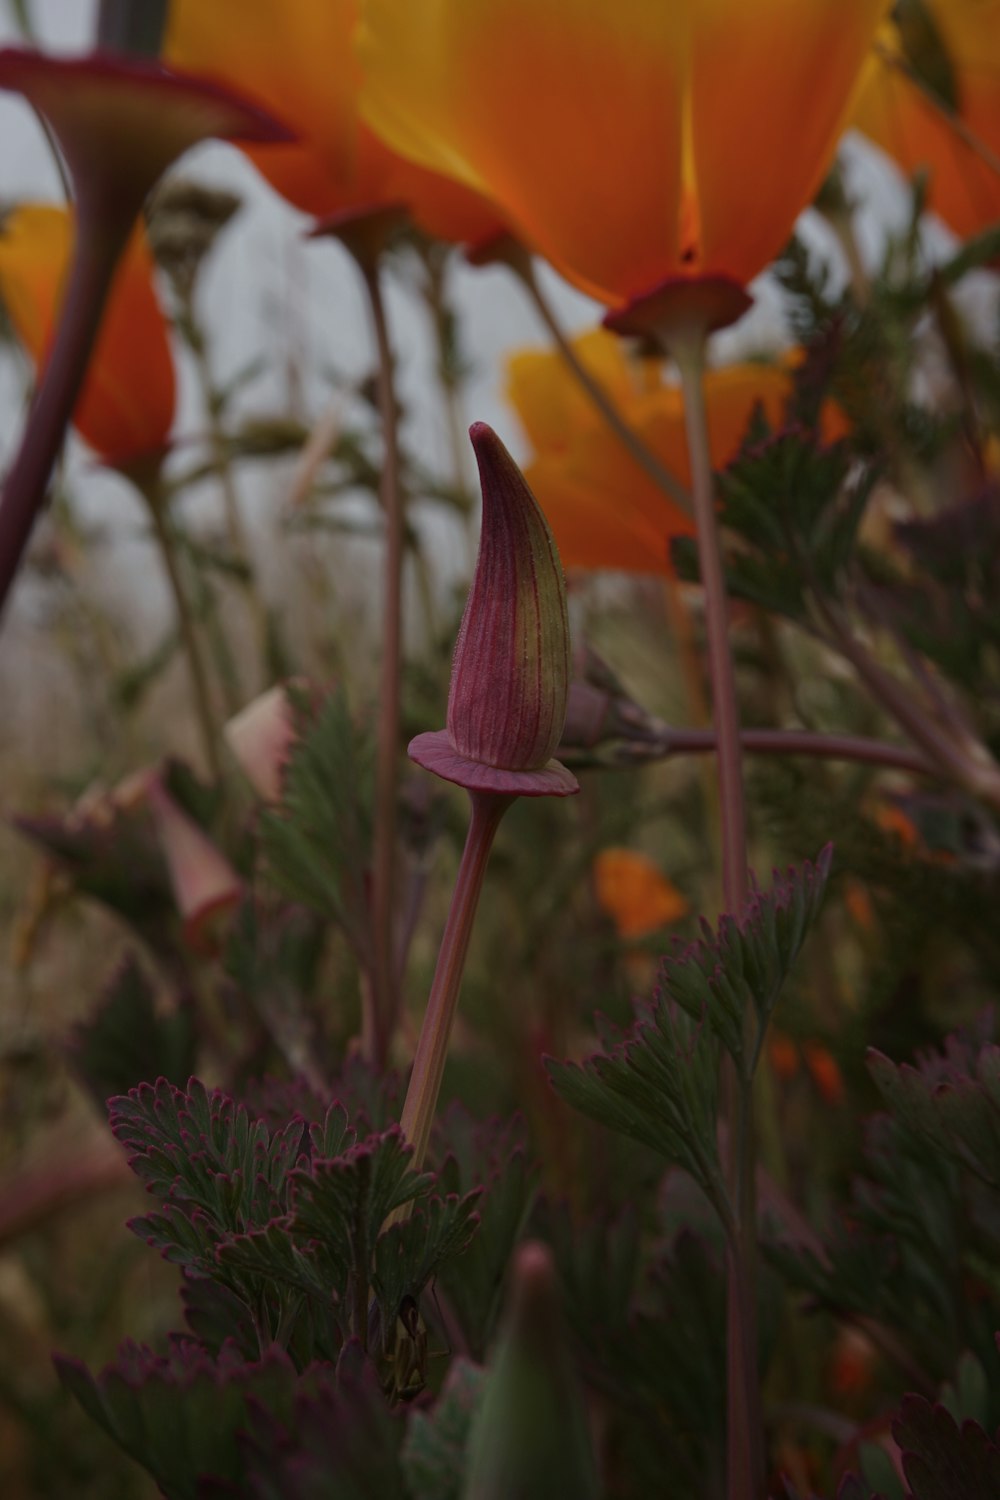 red and purple flower in tilt shift lens